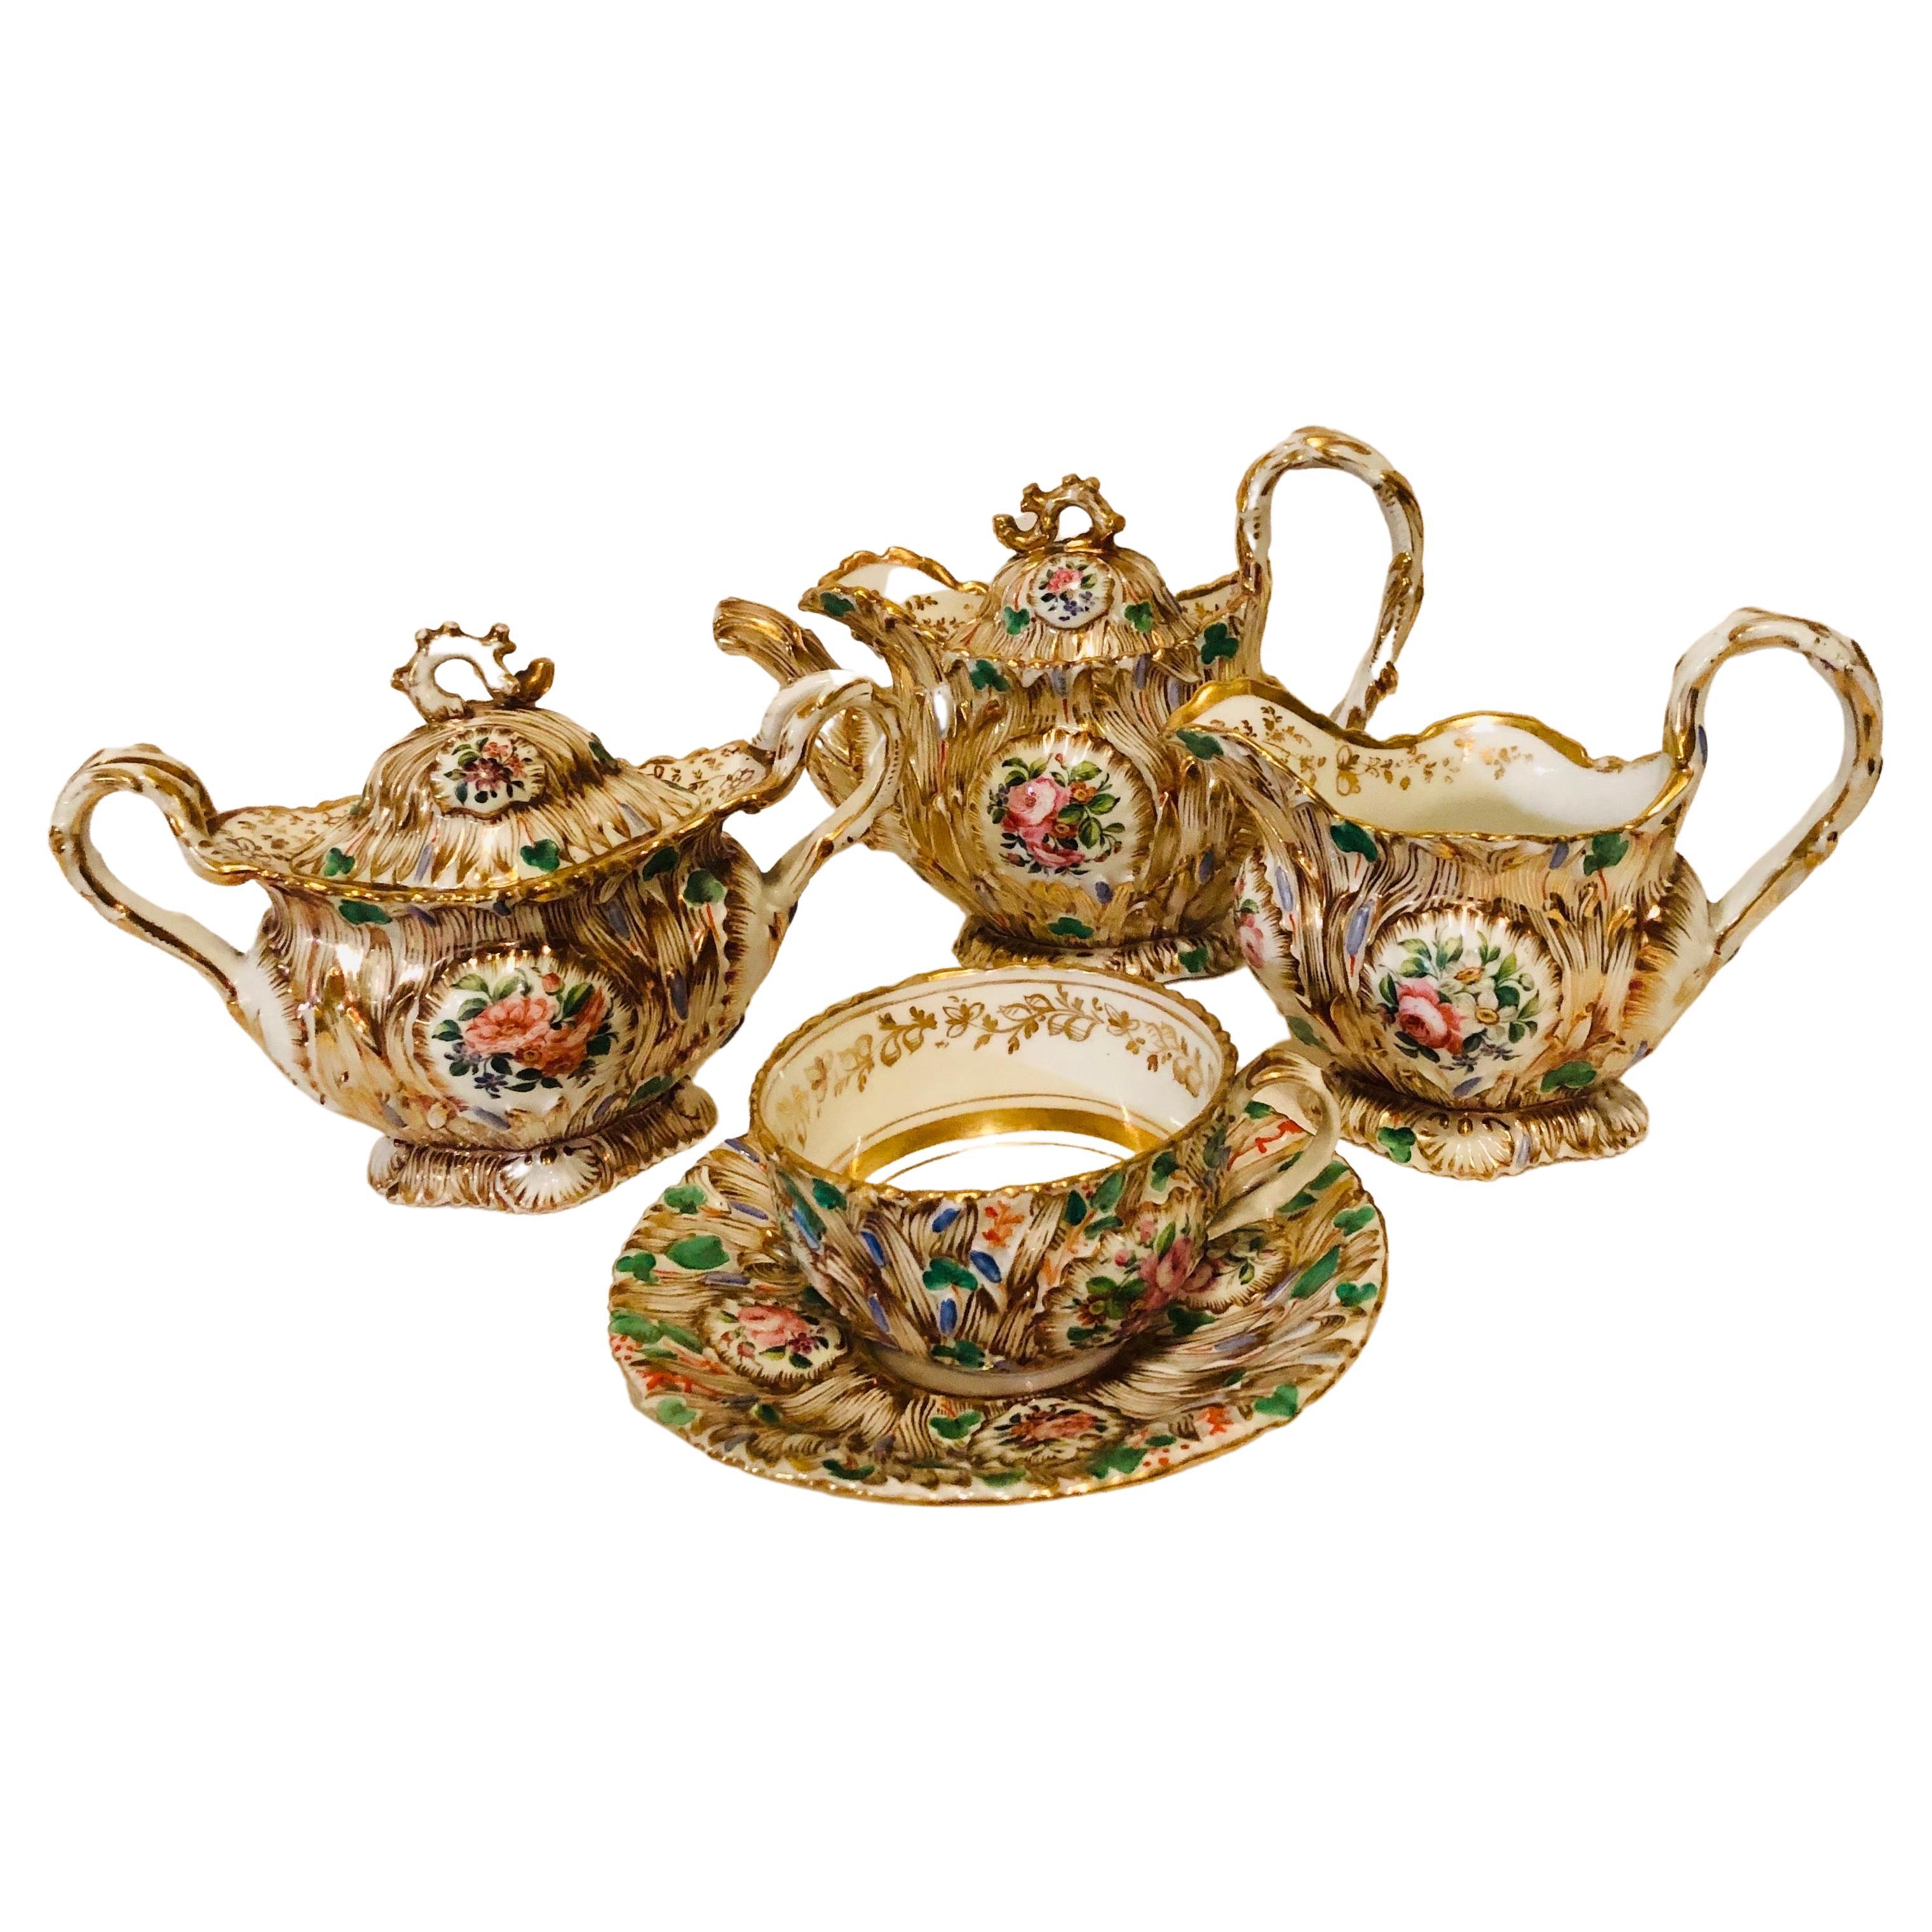 Jacob Petit Paris Porcelain Tea Set with Gilt and Colorful Rococo Decoration For Sale